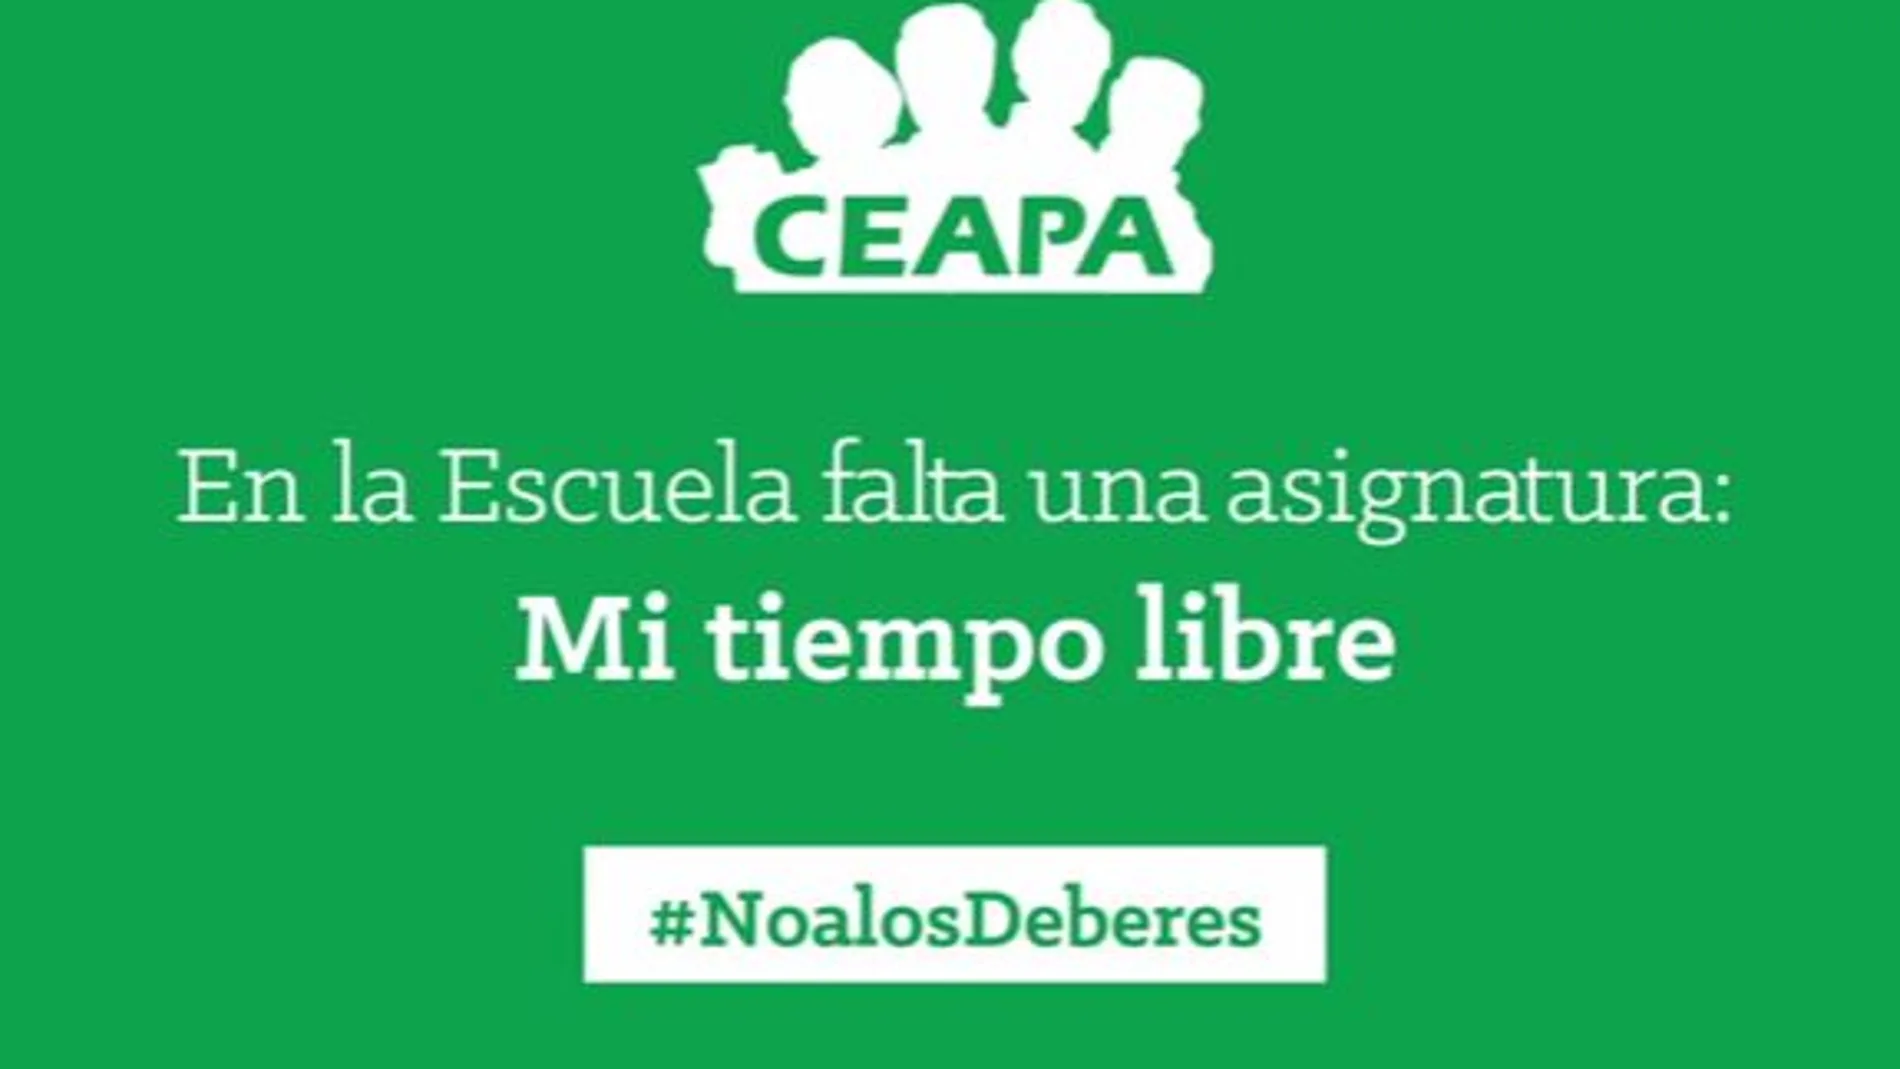 Campaña #NoalosDeberes de CEAPA